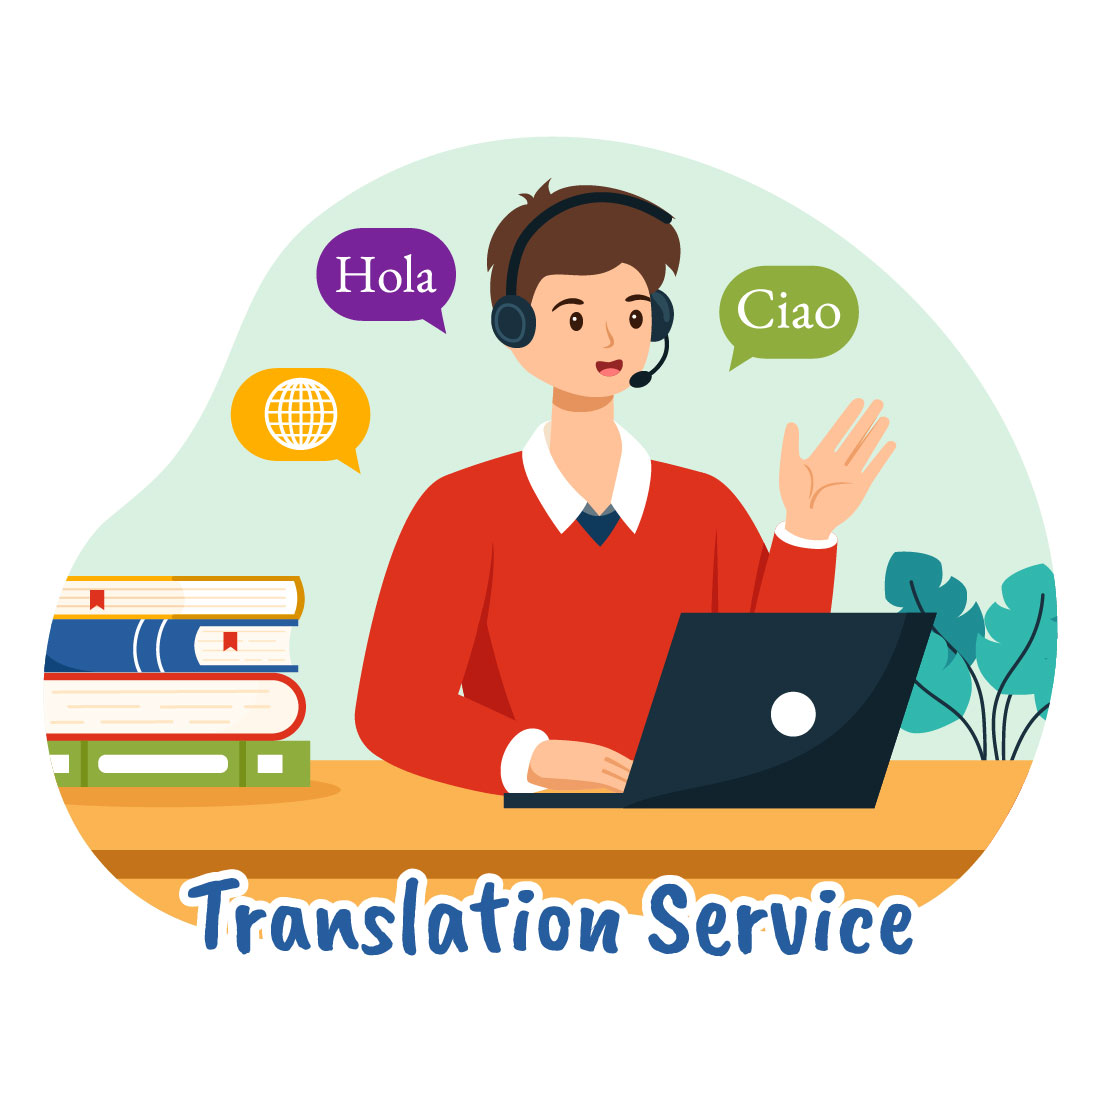 9 Translation Service Illustration cover image.